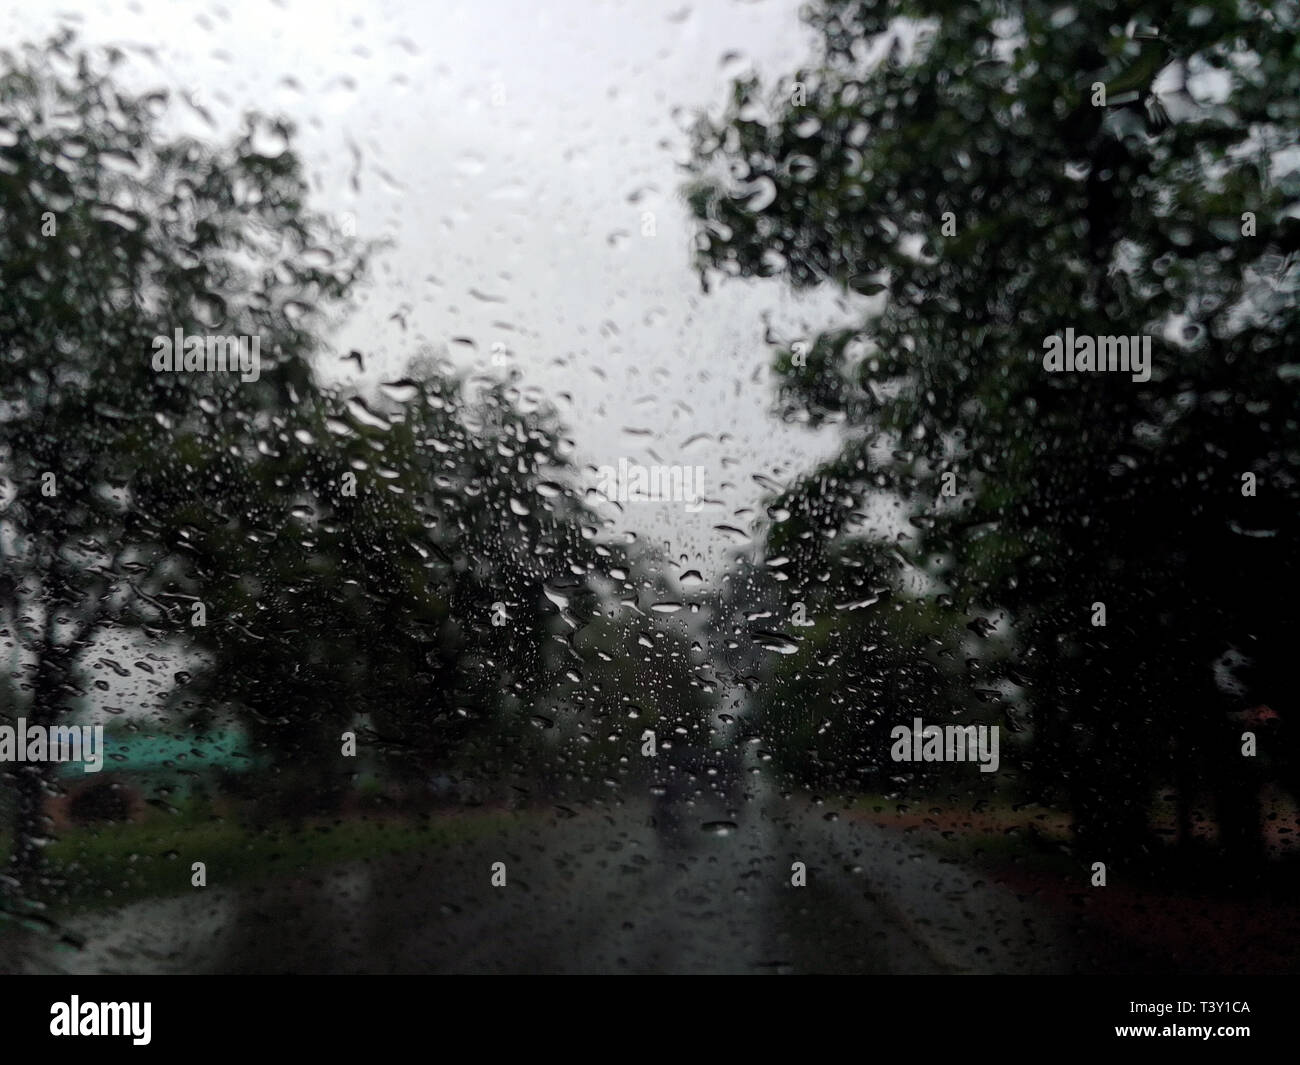 Regen fällt auf das Auto Glas Fenster mit Straße in der Regenzeit Abstract Background, Wassertropfen auf dem Glas, Nacht Sturm Regen Autofahren Konzept. Stockfoto